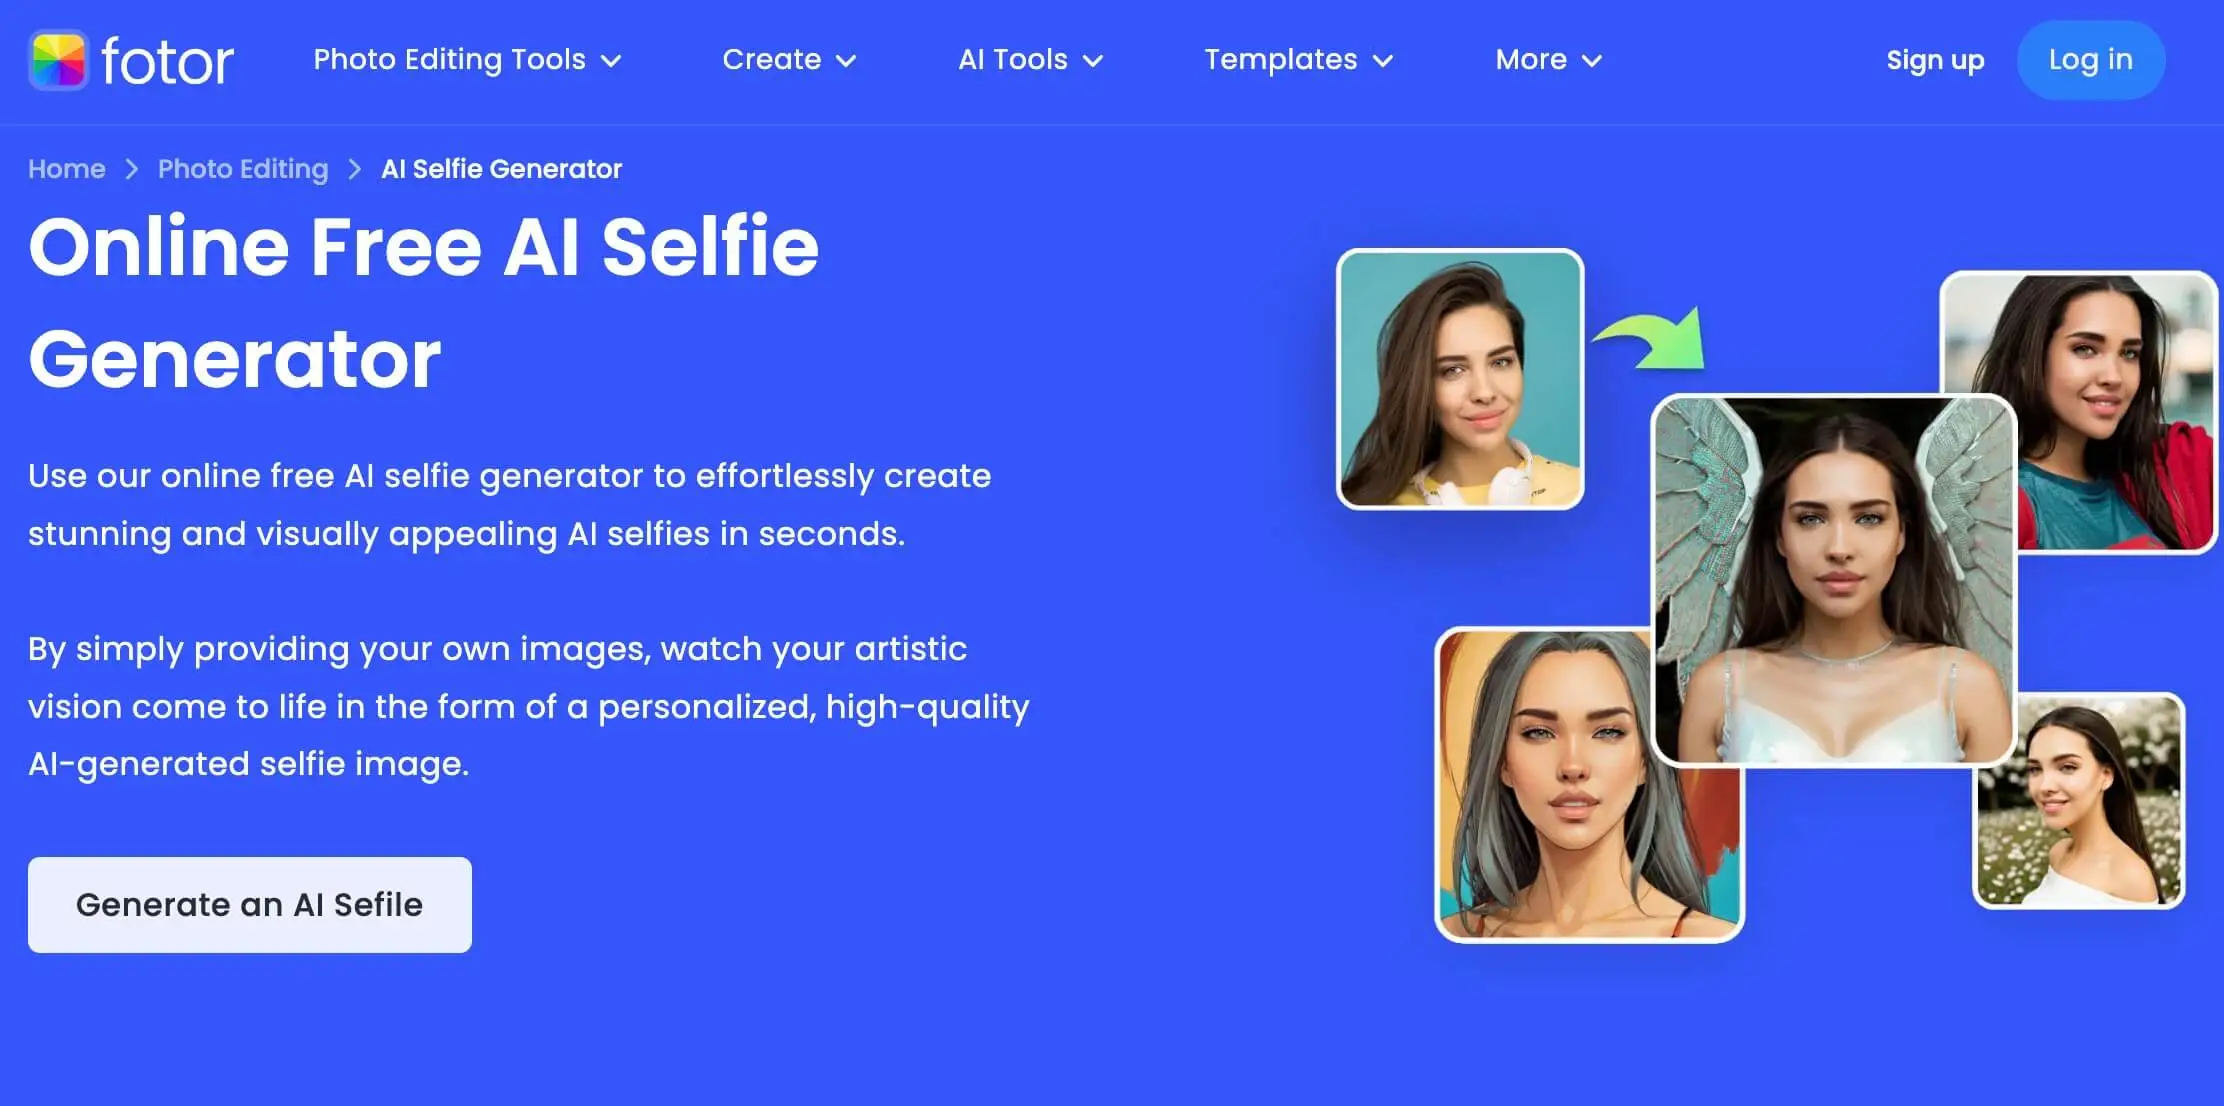 Fotor AI Selfie Generator